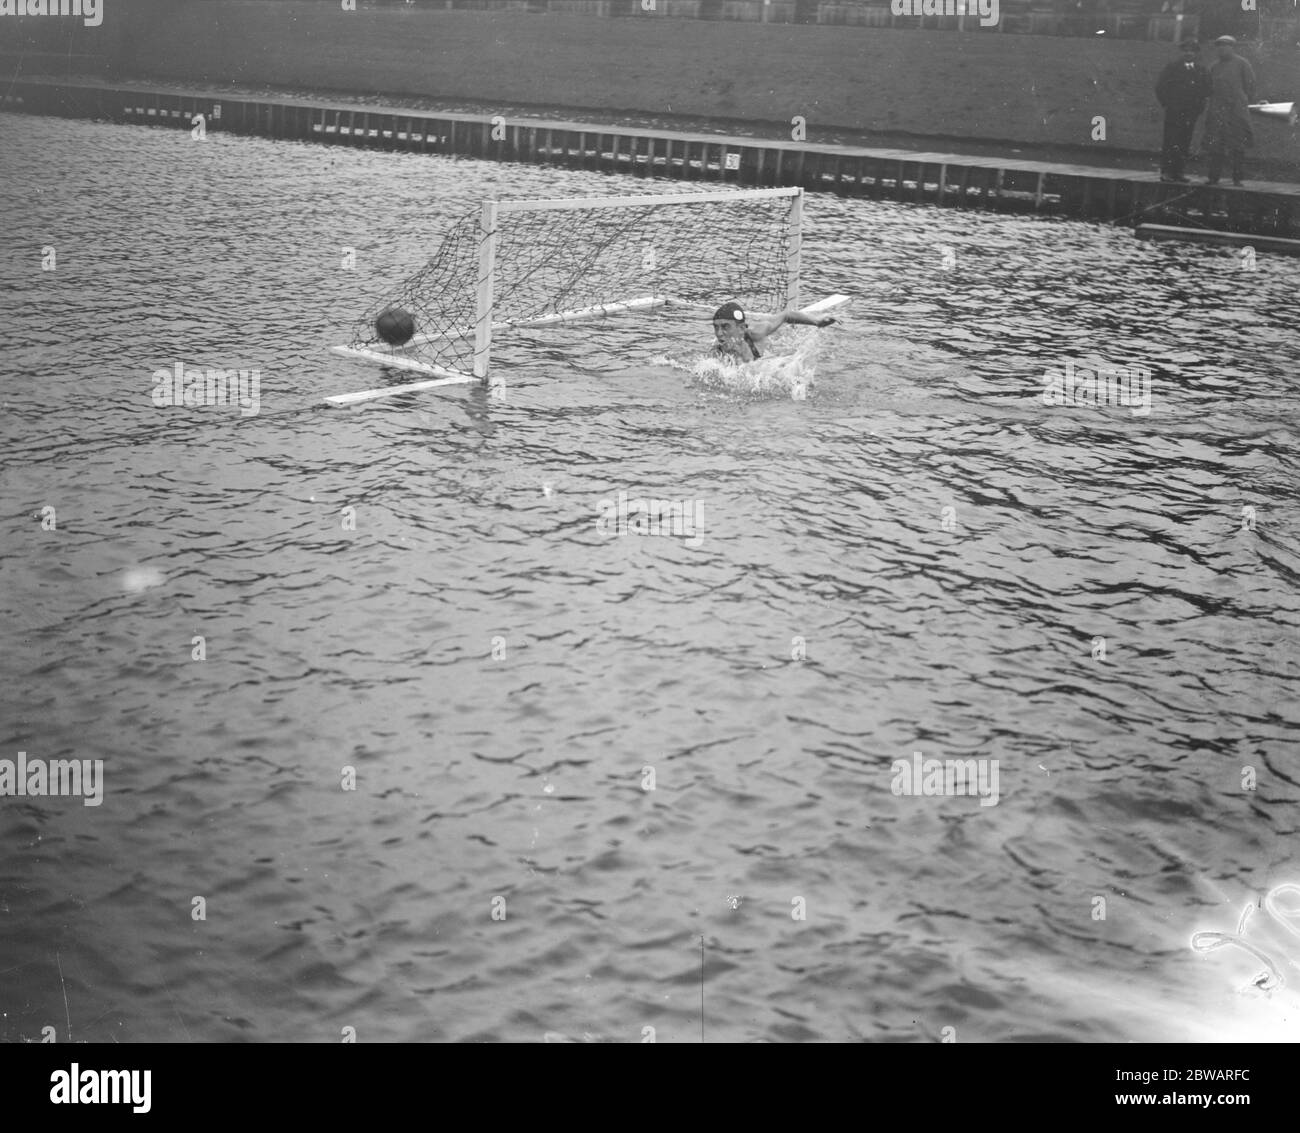 Giochi olimpici al polo acquatico di Anversa, Spagna contro Italia il goalie italiano fa un risparmio e uno splash 24 agosto 1920 Foto Stock